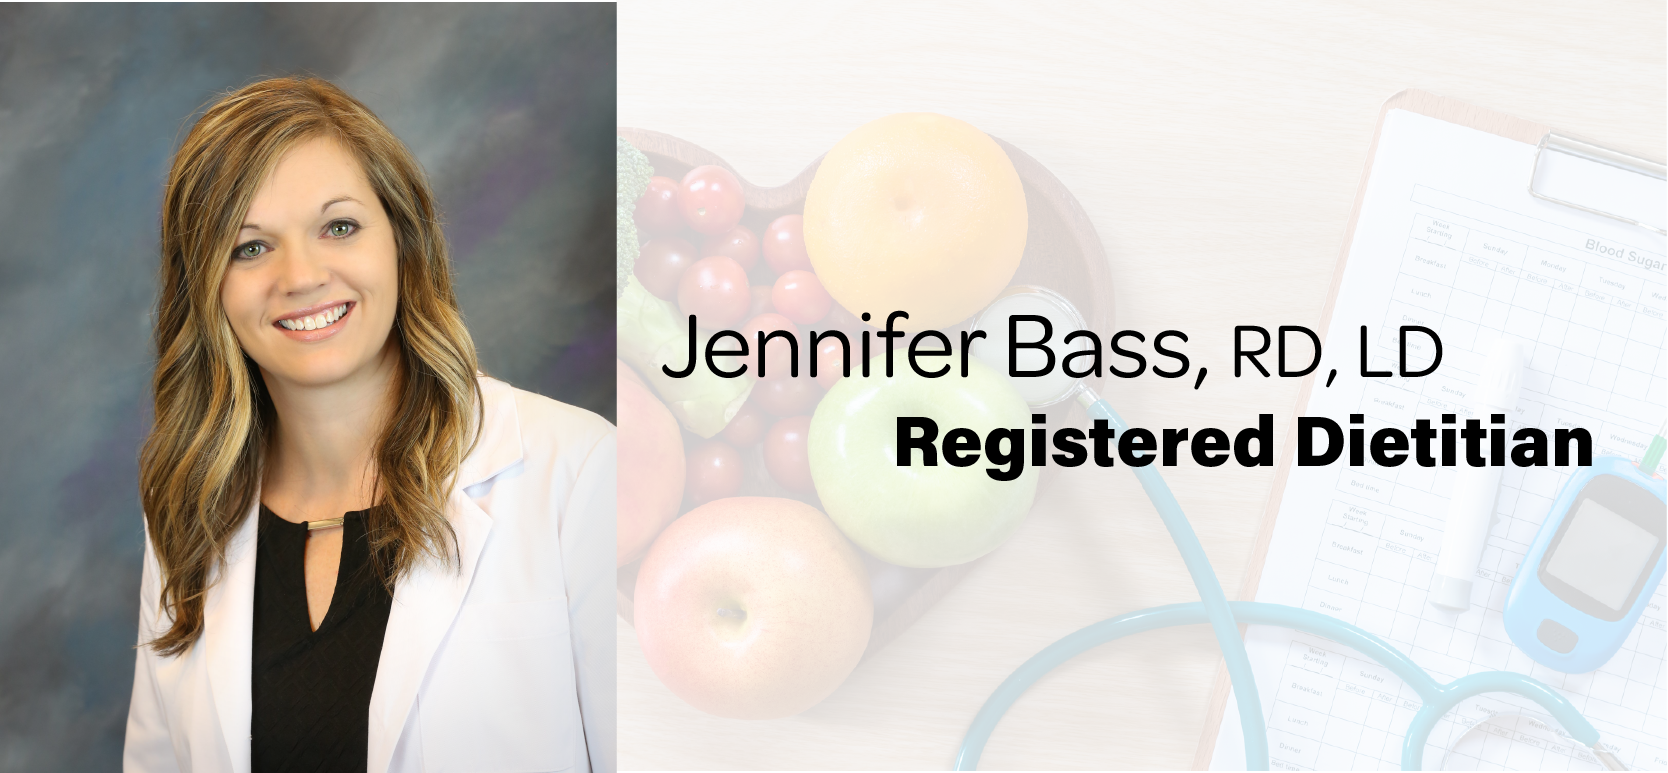 Registered Dietitian - Jennifer Bass, RD, LD